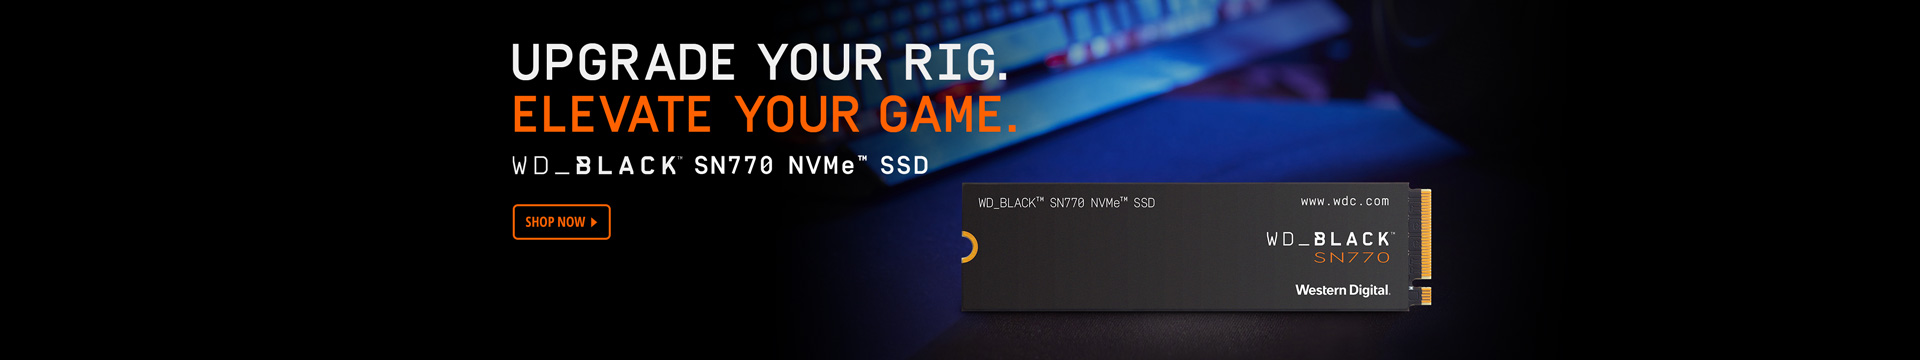 WD_BLACKTM SN770 NVMeTM SSD